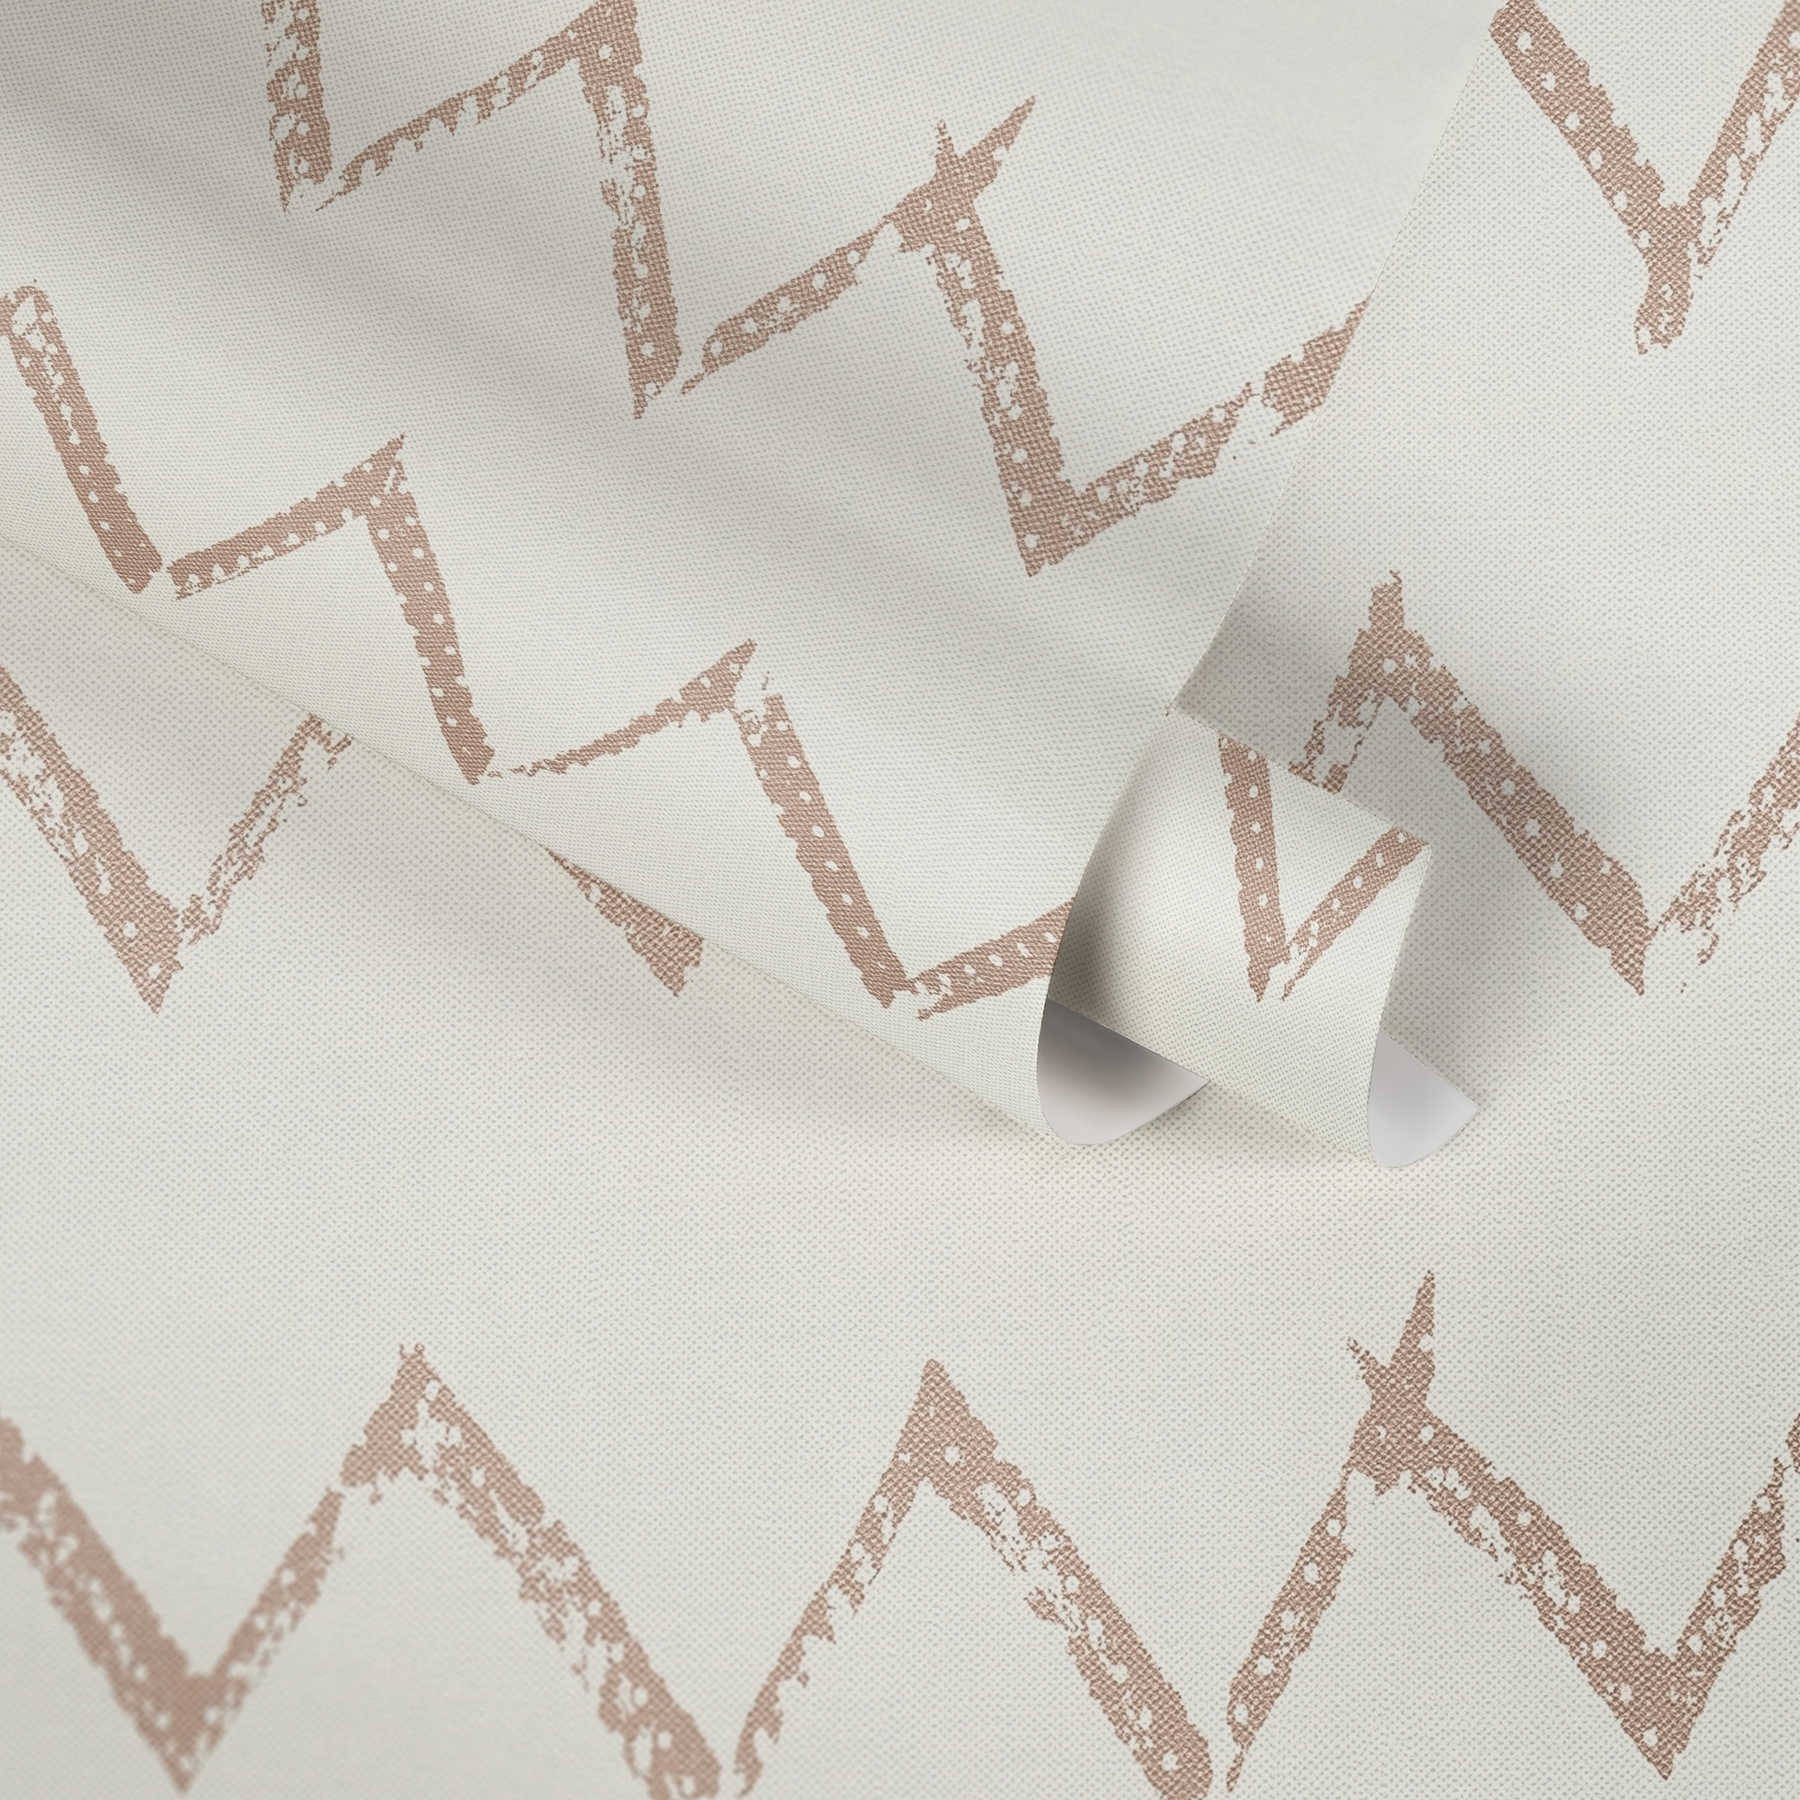             behang zigzagpatroon & linnenstructuur - metallic, wit
        